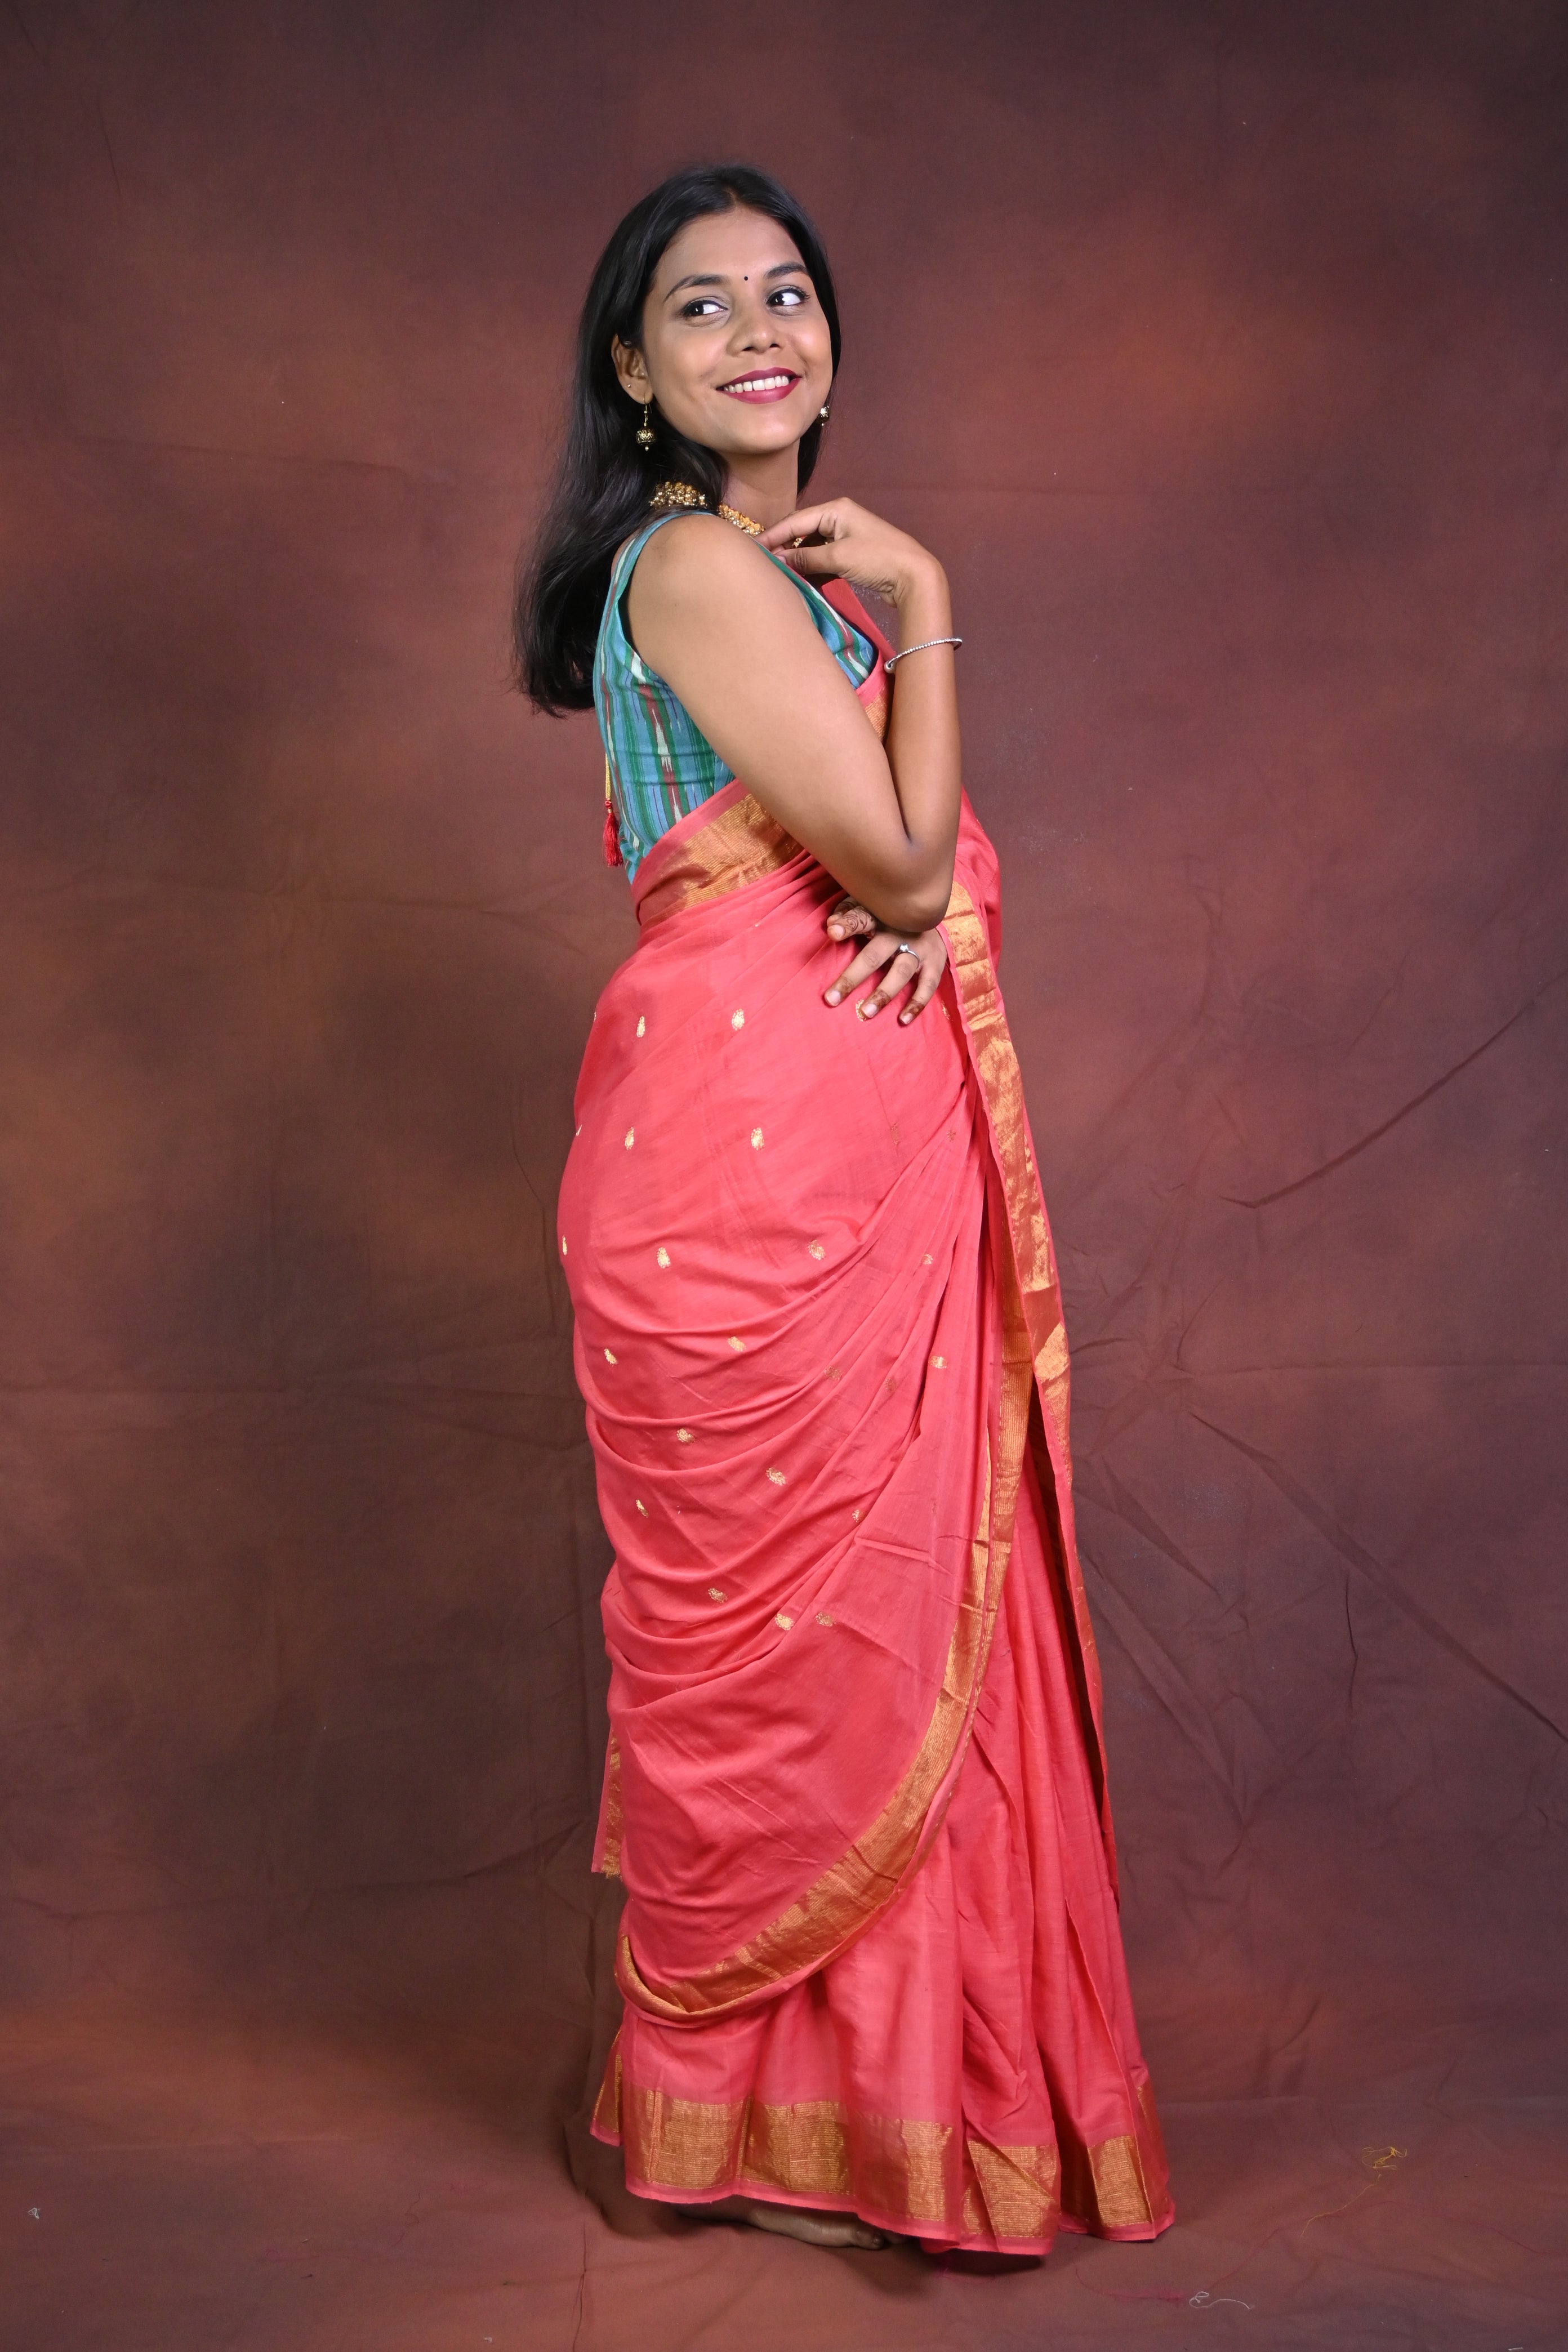 Buy Satrani Women'S Black and Golden Paithani Jacquard Silk Saree | sarees  for Women| saree | sarees Online at Best Prices in India - JioMart.